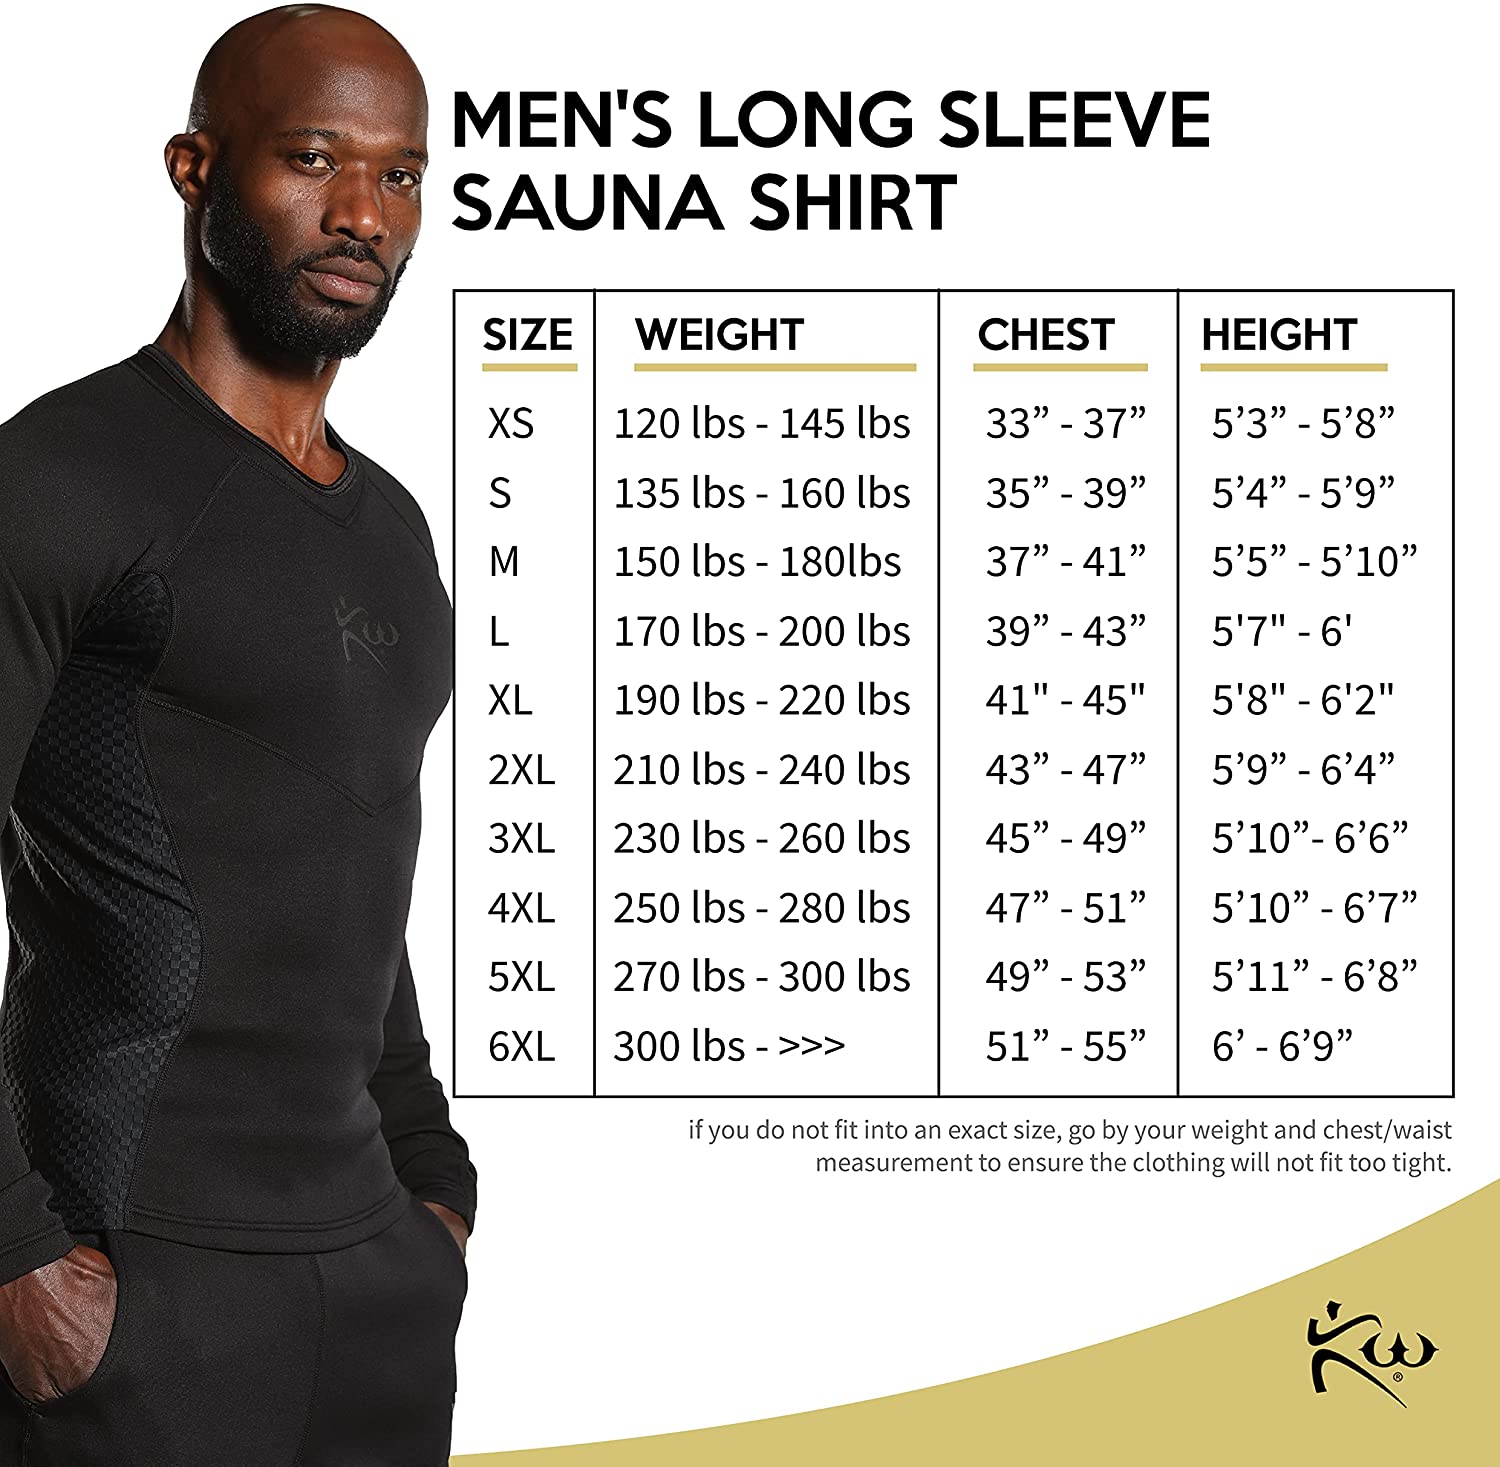 Neoprene Sauna Suit Shirt | Weight Loss Cutting Weight